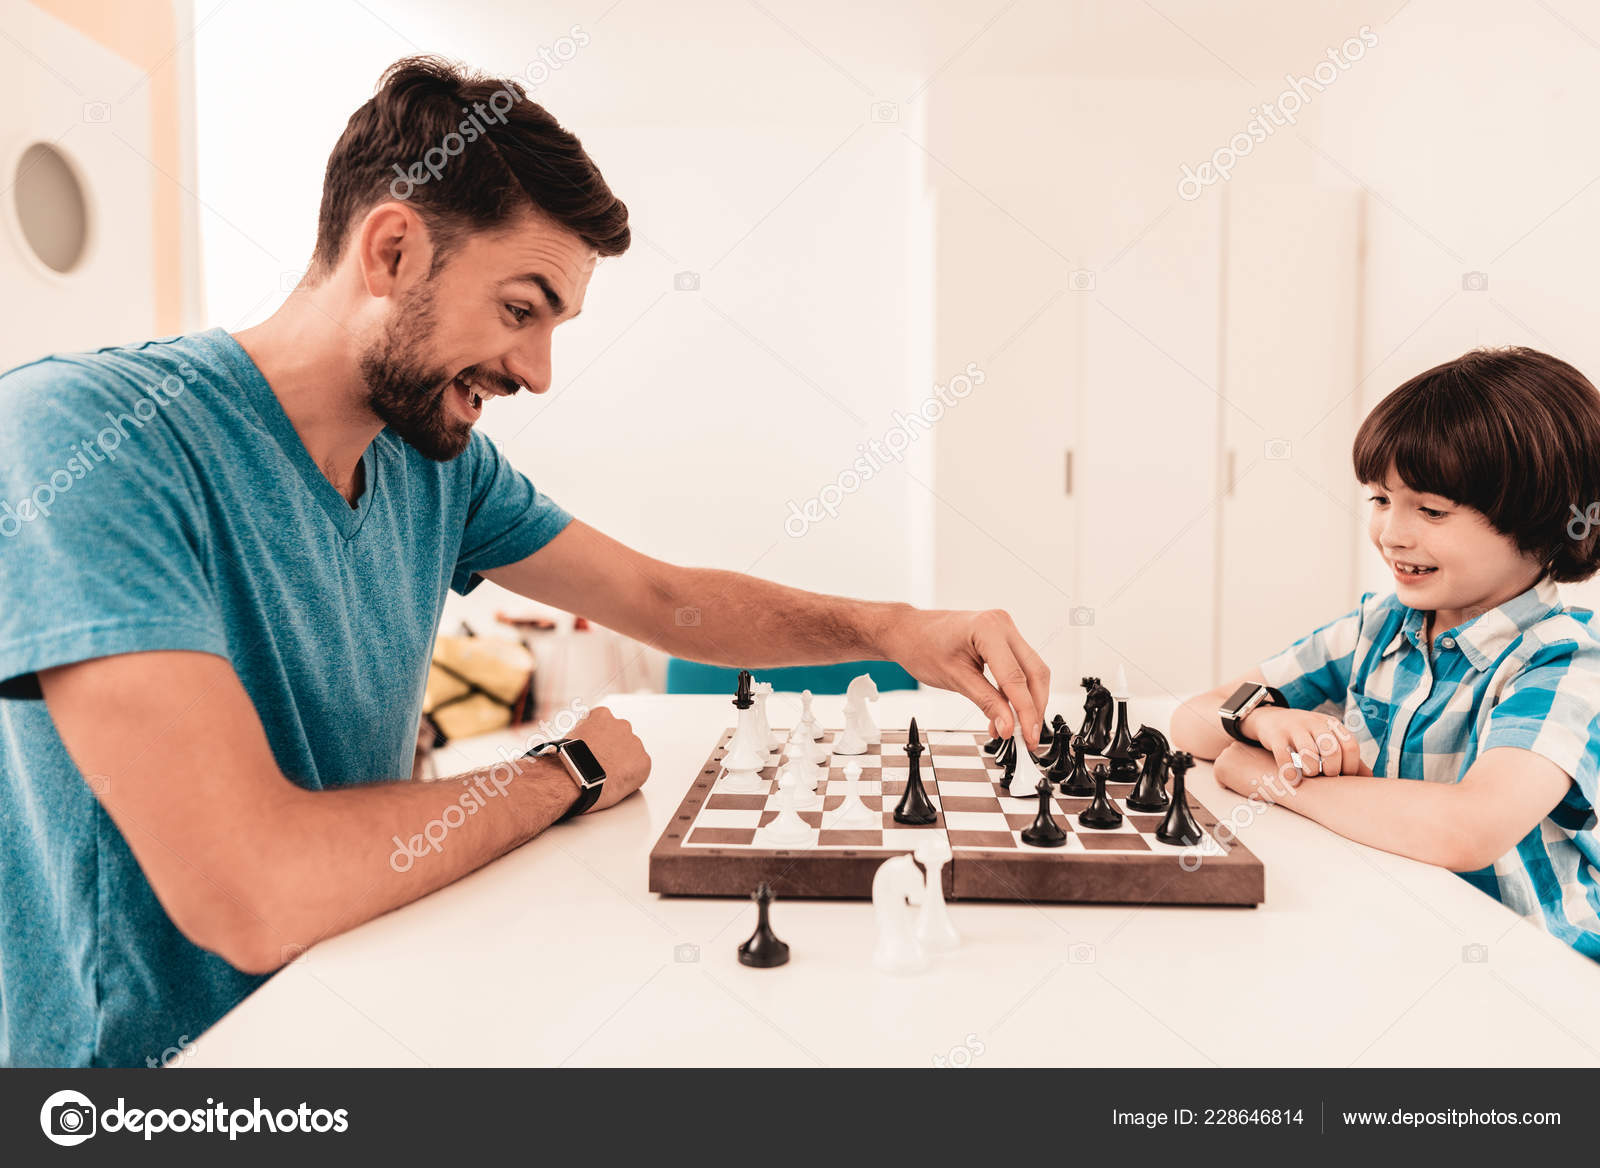 Xadrez de jogo de tabuleiro e homens jogando em uma mesa enquanto